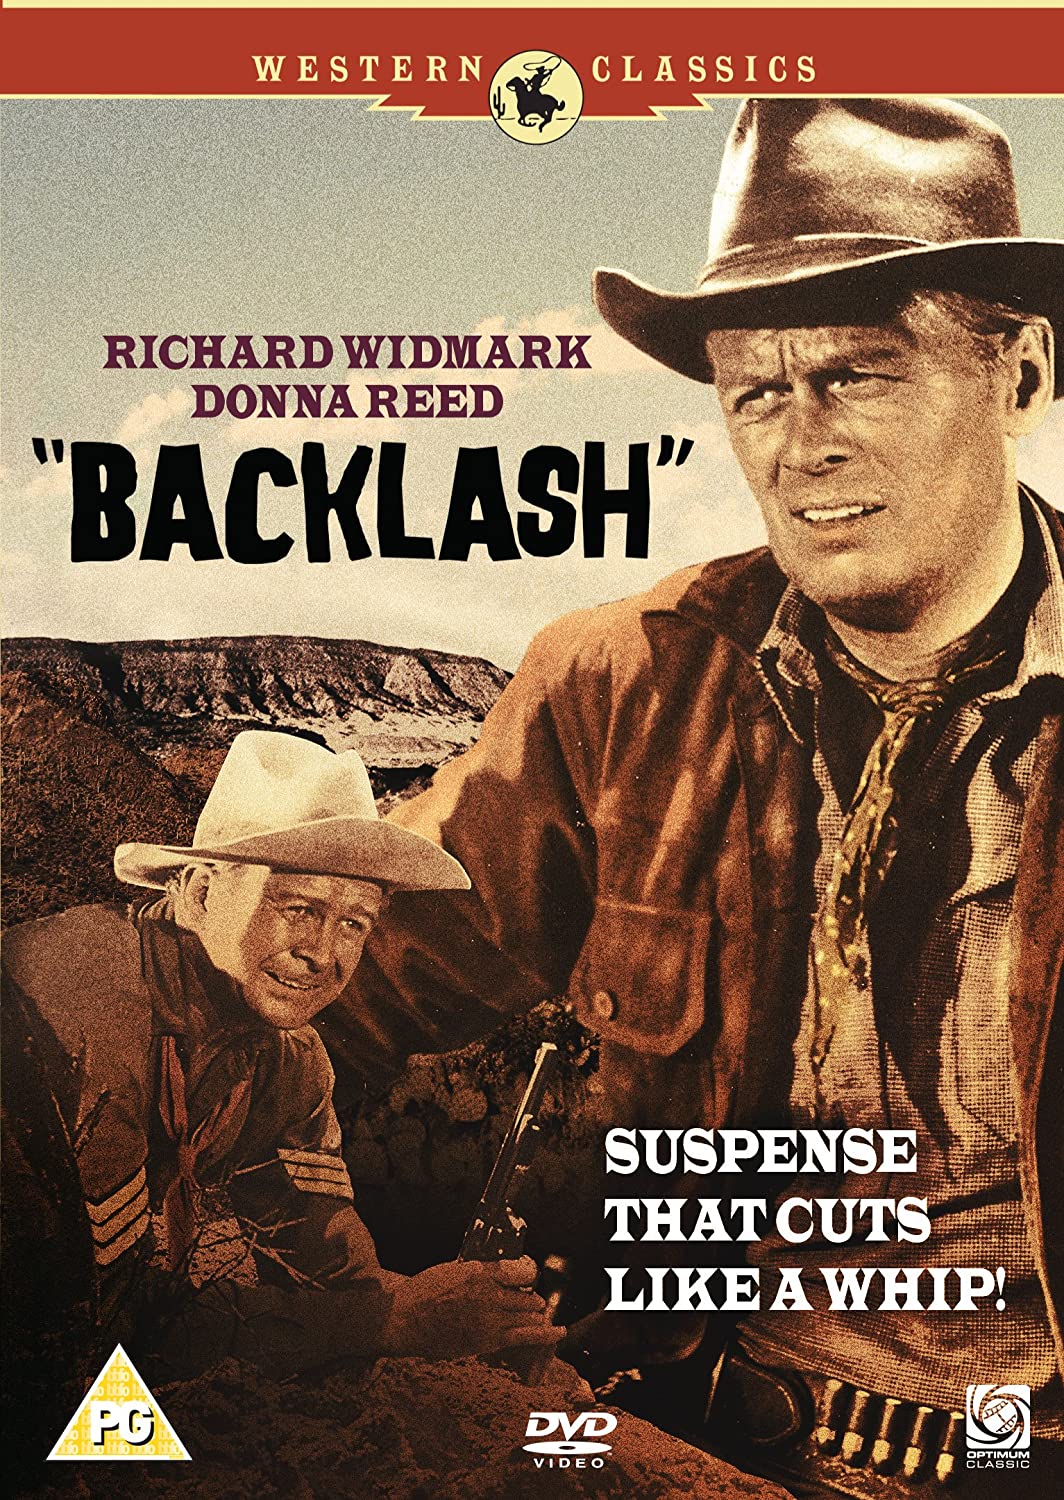 ดูหนังออนไลน์ฟรี Backlash (1956) แบล็คลัช